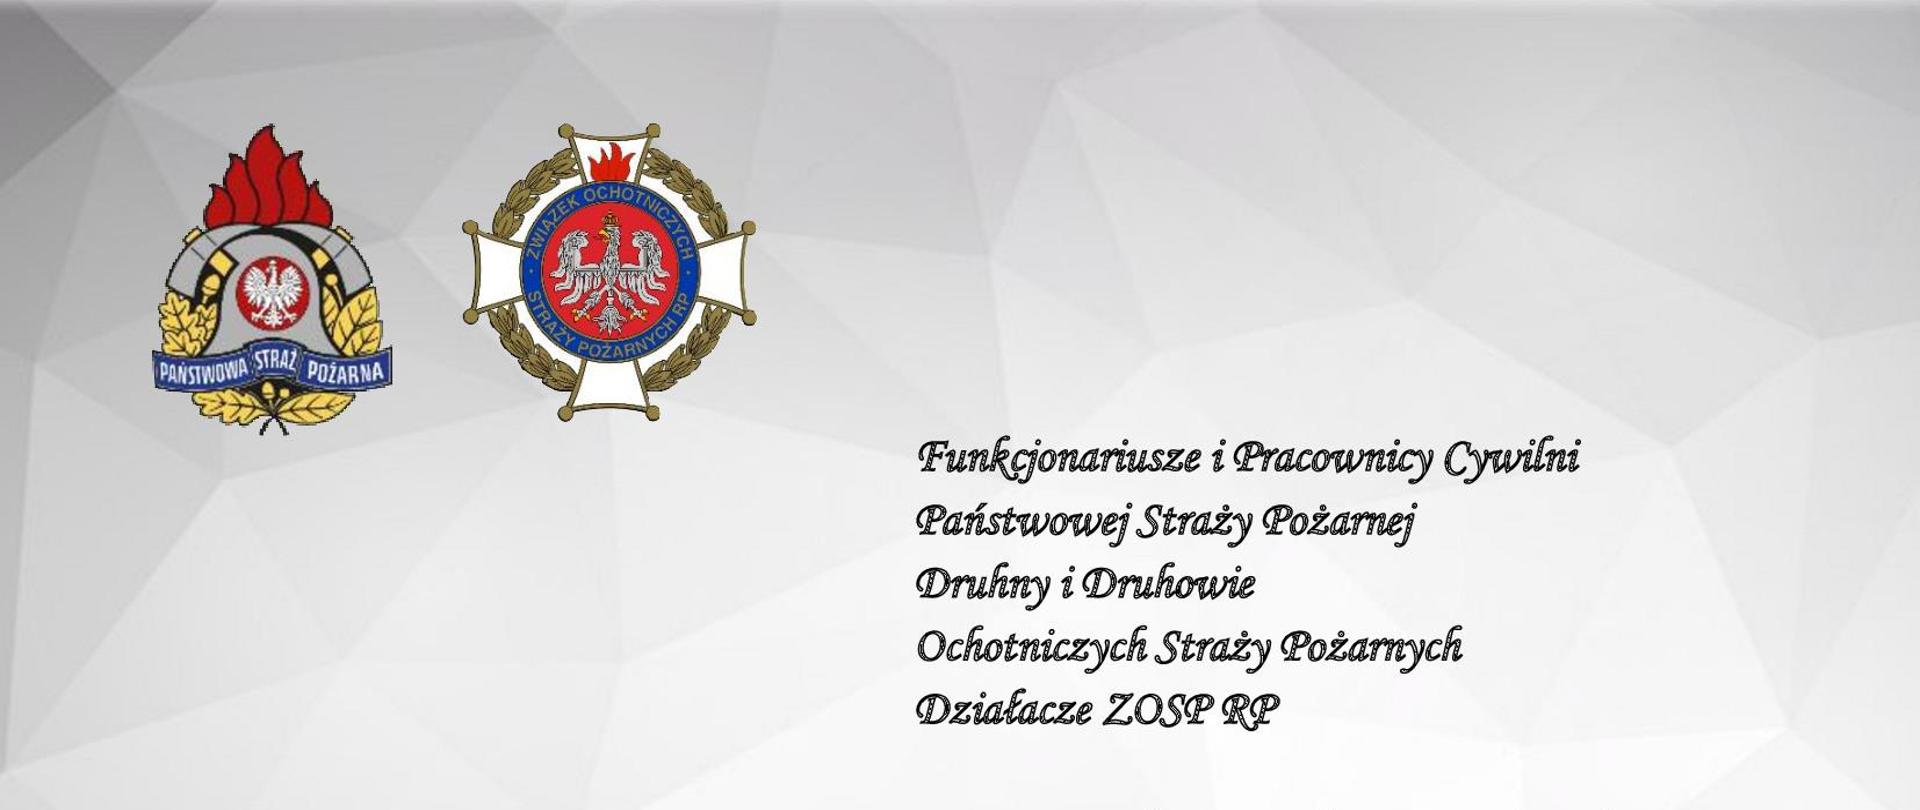 Zdjęcie przedstawia życzenia z okazji Dnia Strażaka. Życzenia podpisał Komendant Miejski PSP w Koninie oraz druhowie prezesi OSP. 